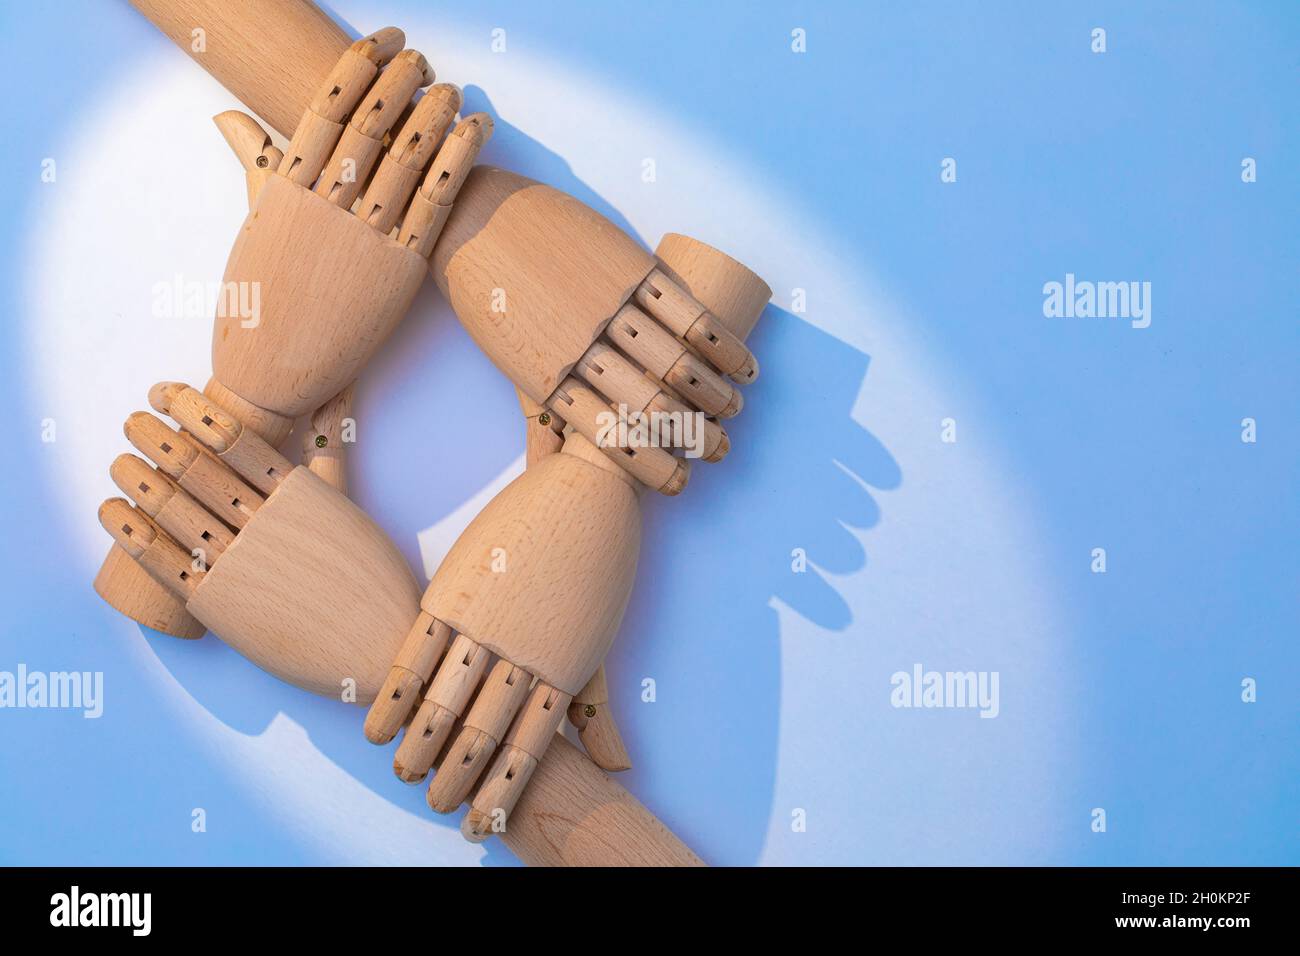 Nahaufnahme der Hände, die sich halten. Zwei Paar prothetische Hände aus Holz sind versetzt angeordnet, um ein kooperatives Erscheinungsbild zu schaffen. Eine Kombination aus Holz ha Stockfoto